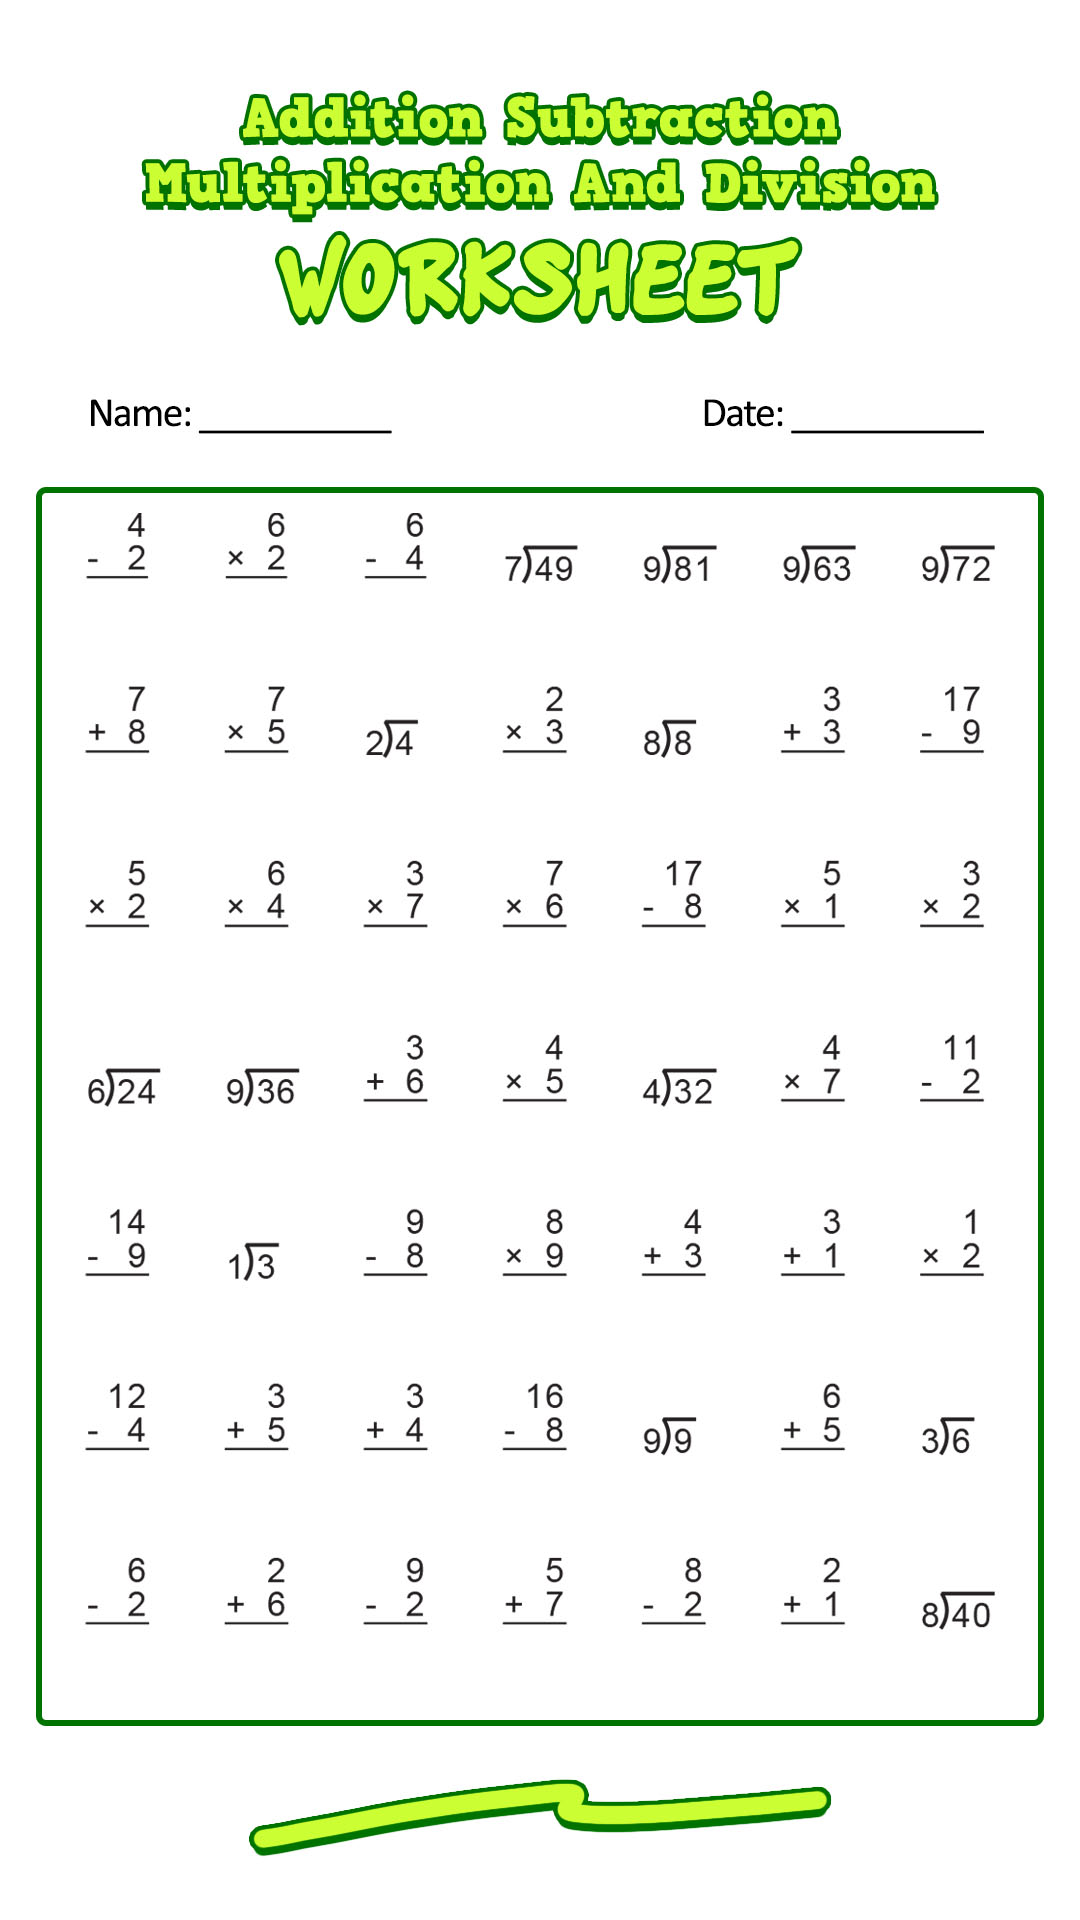 17-best-images-of-timed-multiplication-worksheets-printable-multiplication-worksheets-100